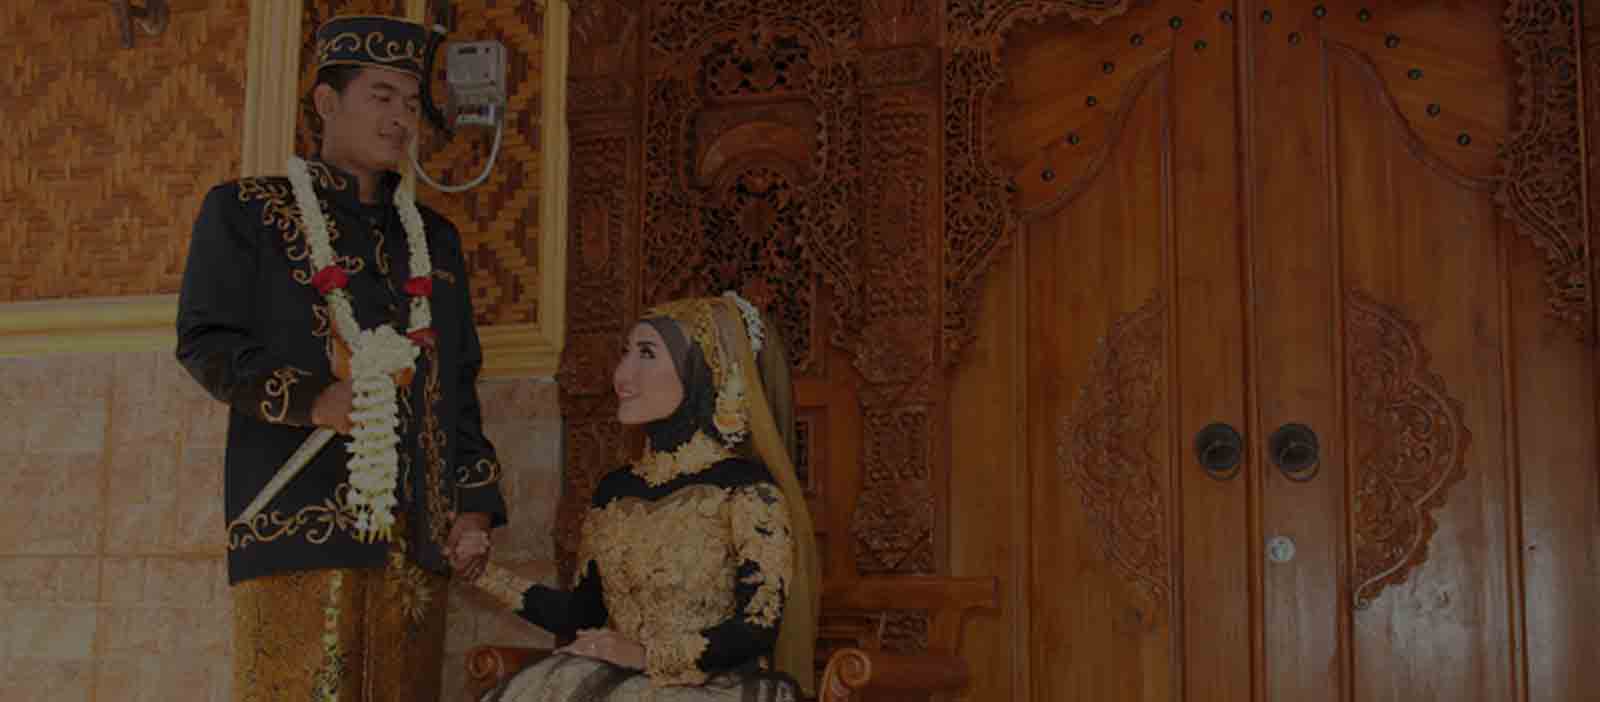 Dekorasi Pernikahan di Rumah, Vendor Dekorasi Adat Jawa.